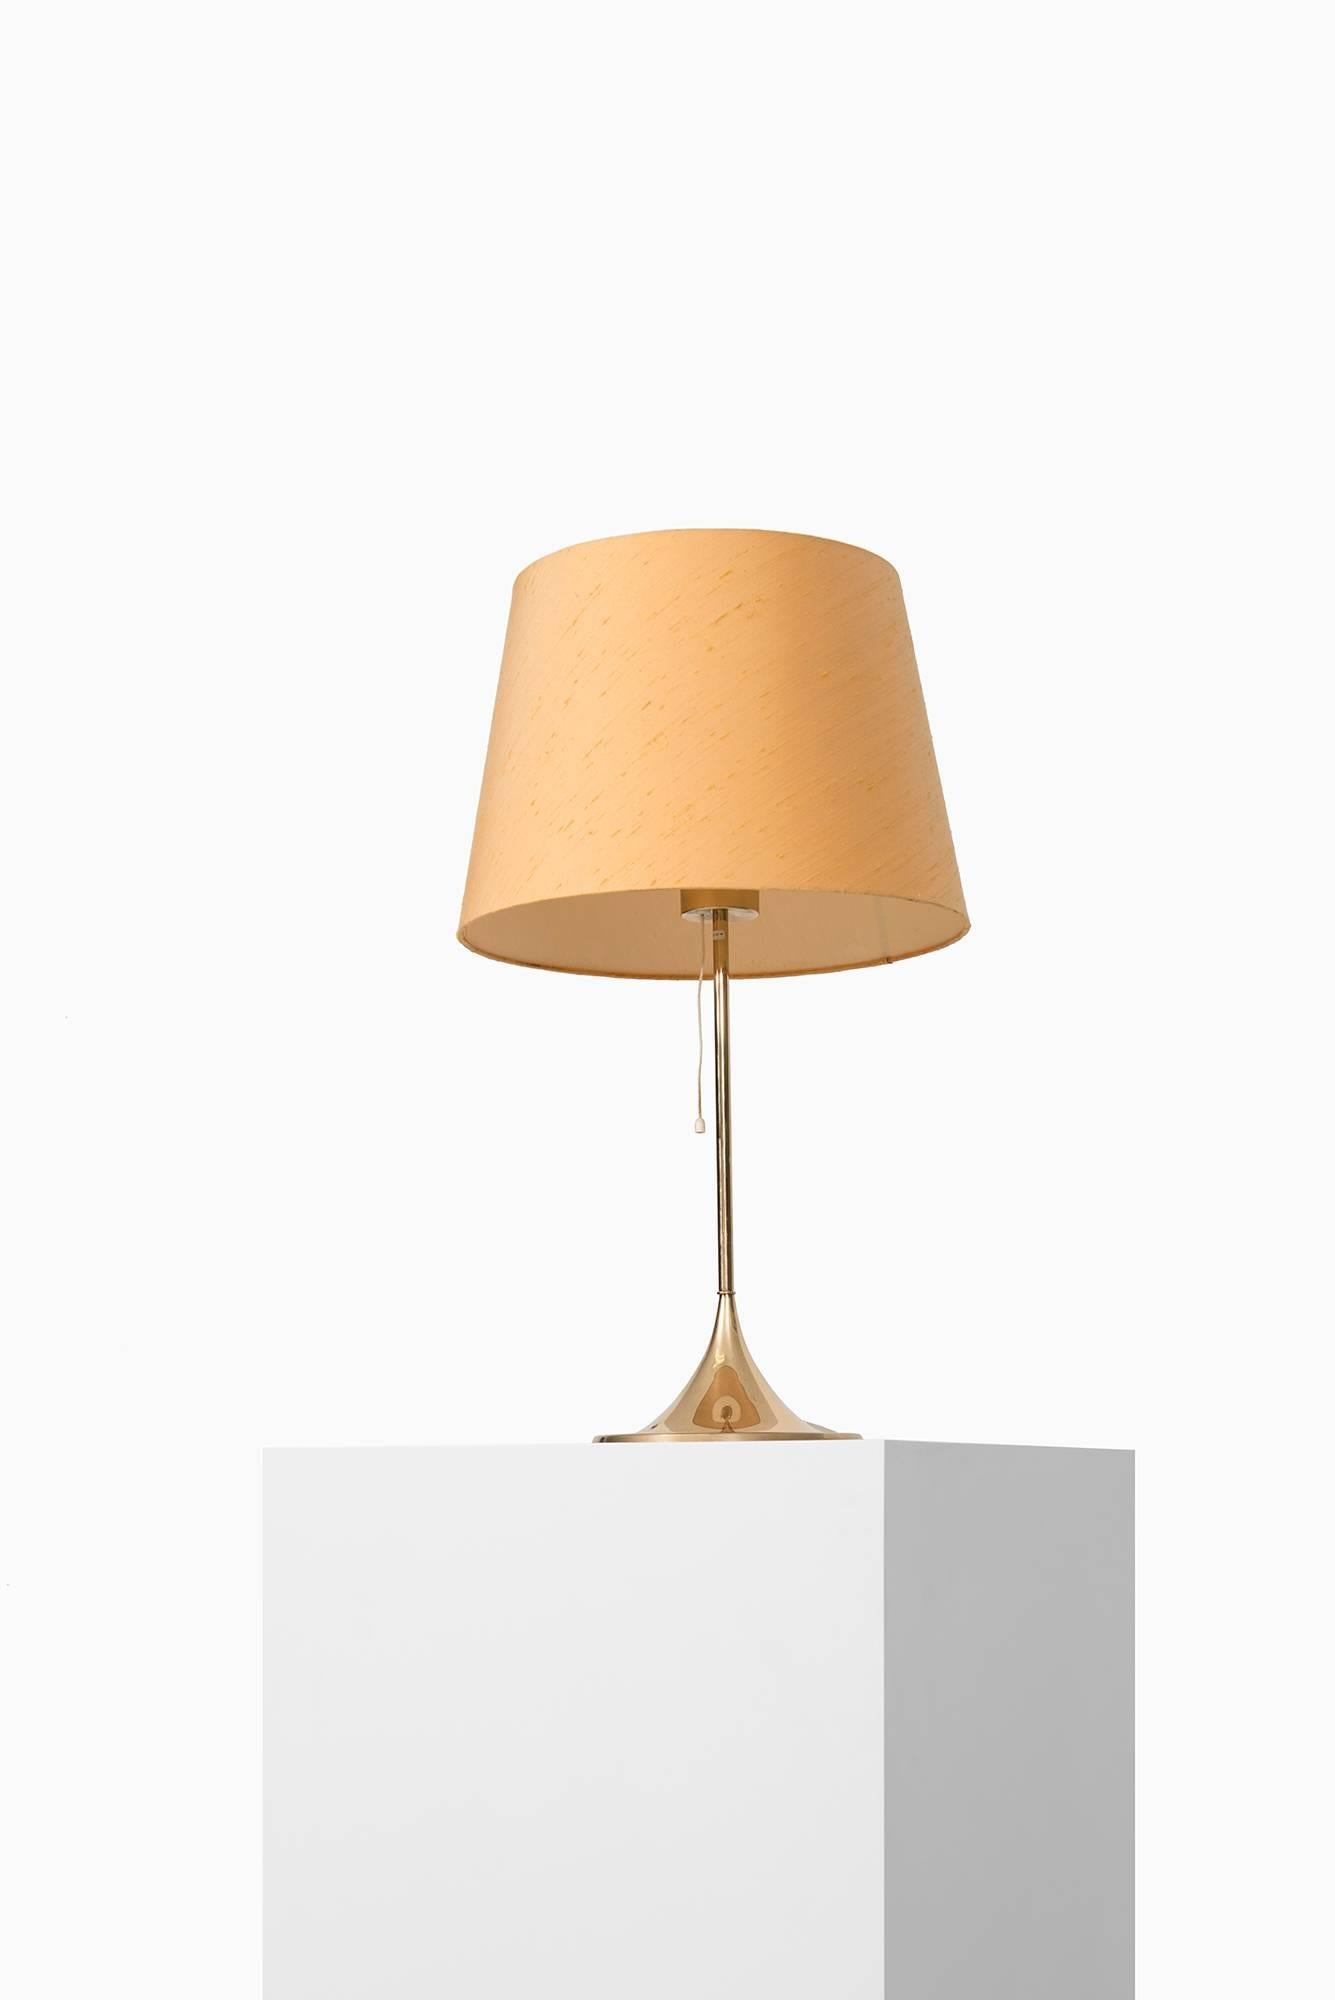 Scandinavian Modern Table Lamp Model B-024 by Bergbom in Sweden For Sale